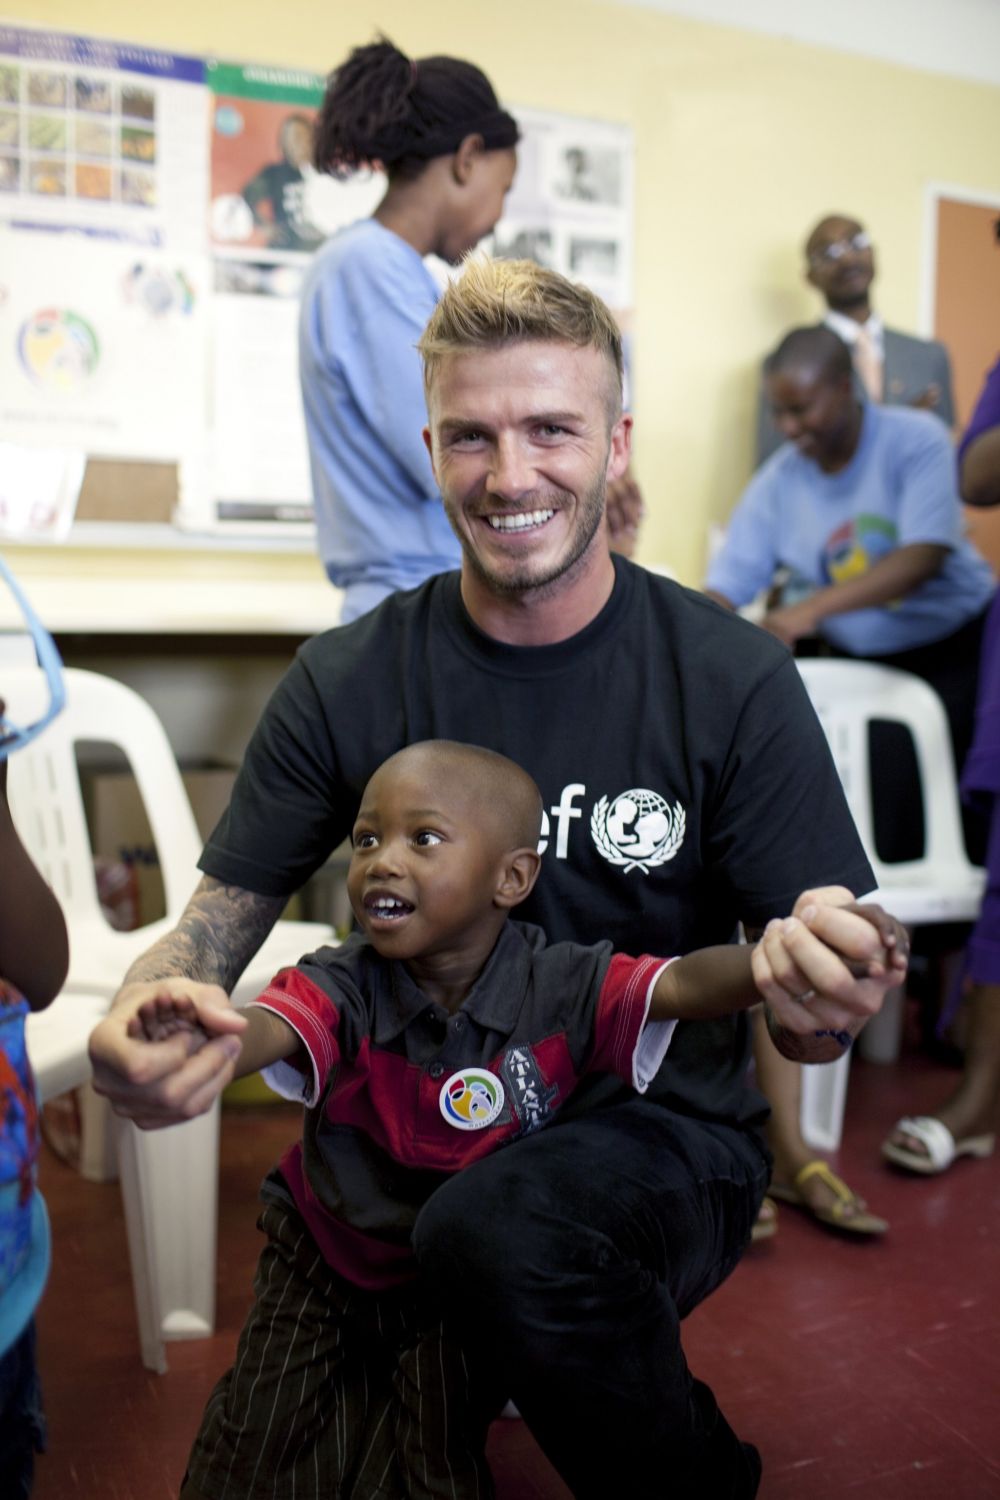 10 Foto mengharukan David Beckham bersama anak-anak Afrika, inspiratif